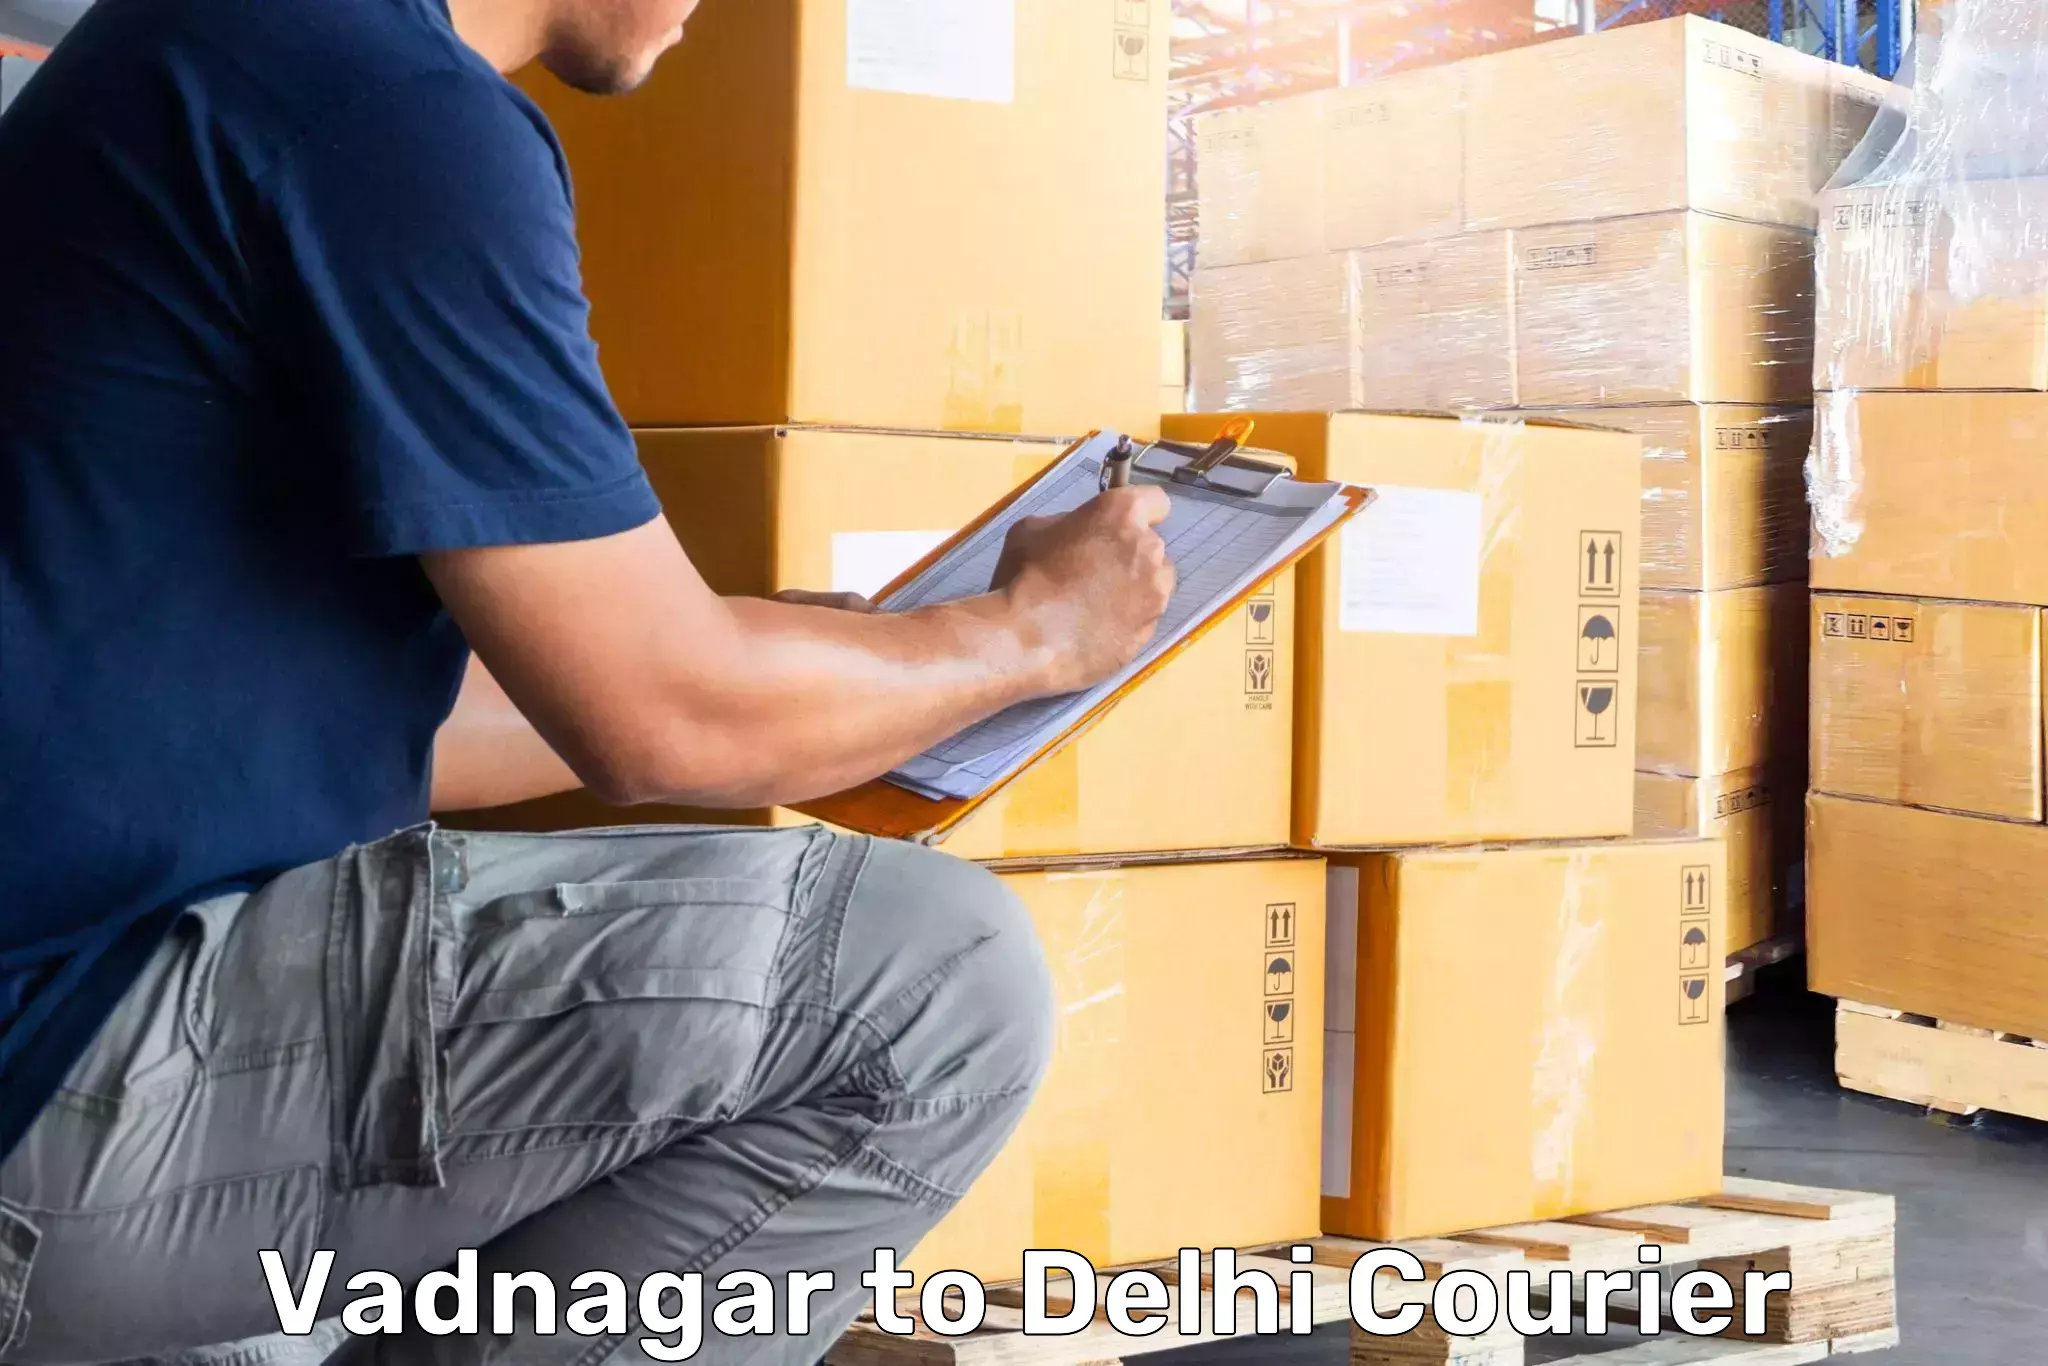 Baggage transport network in Vadnagar to IIT Delhi